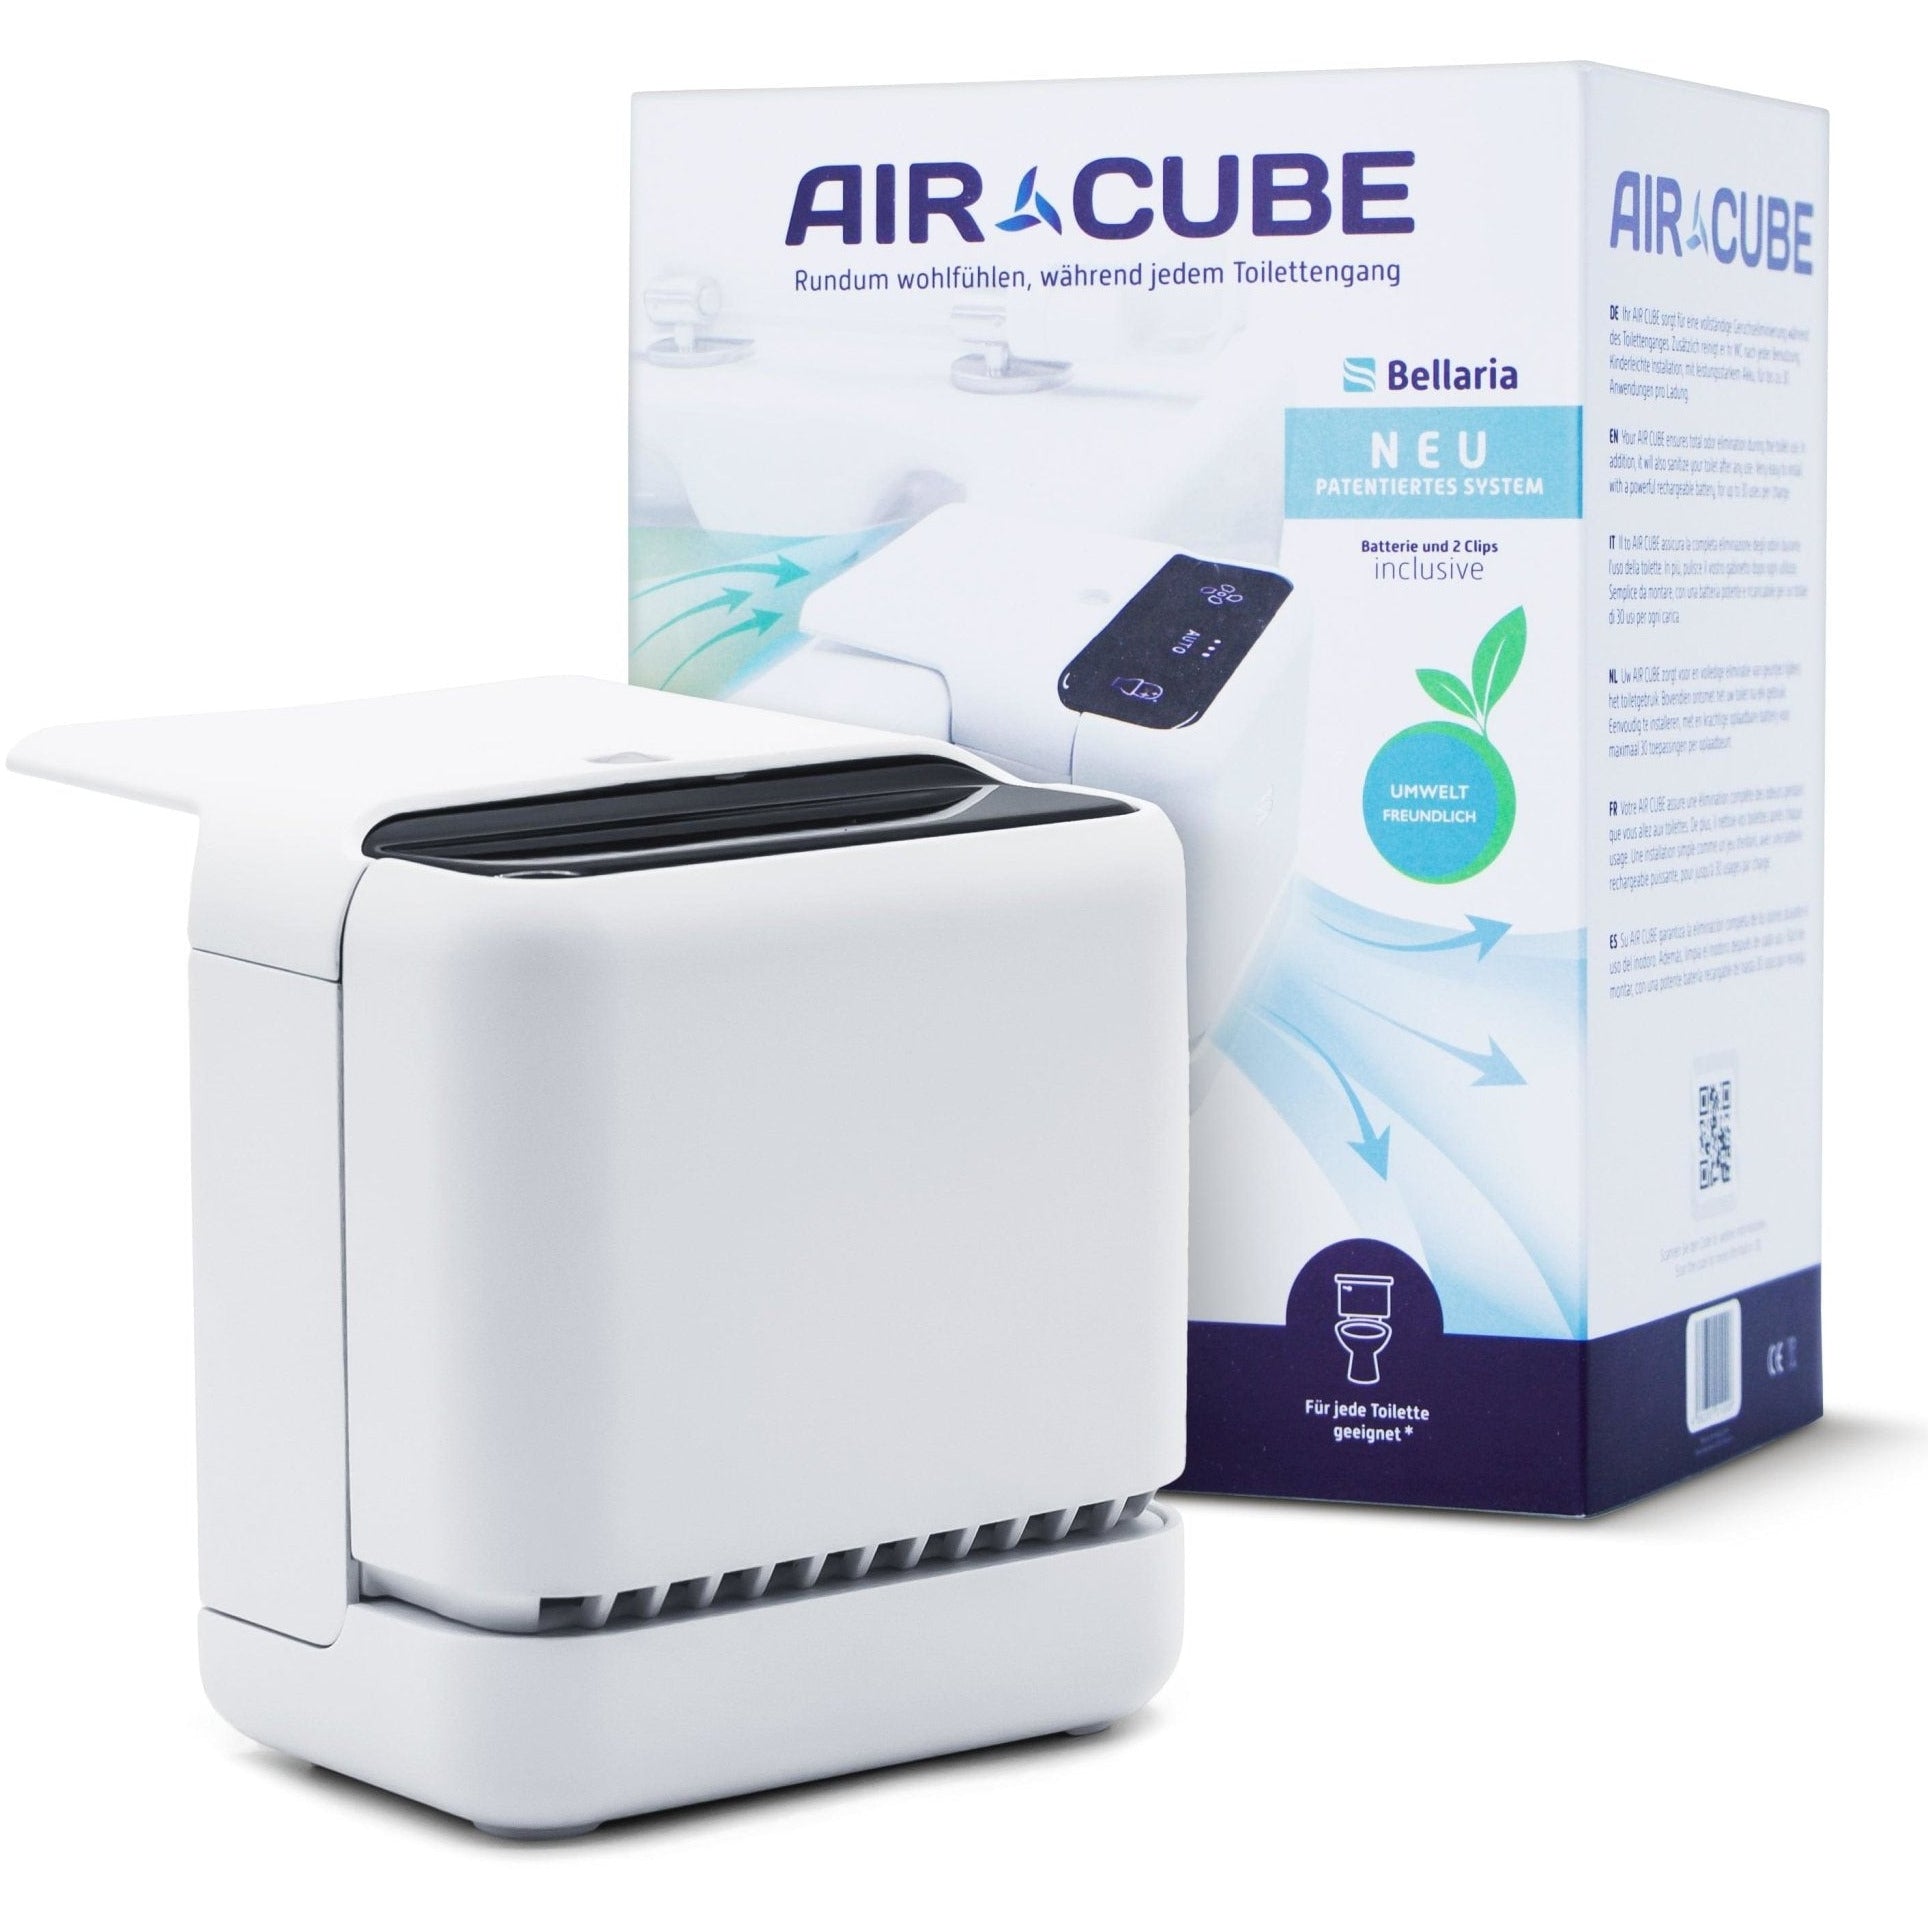 AIR CUBE by Bellaria - Toilette Geruch neutralisieren - Geruchsneutralisierung